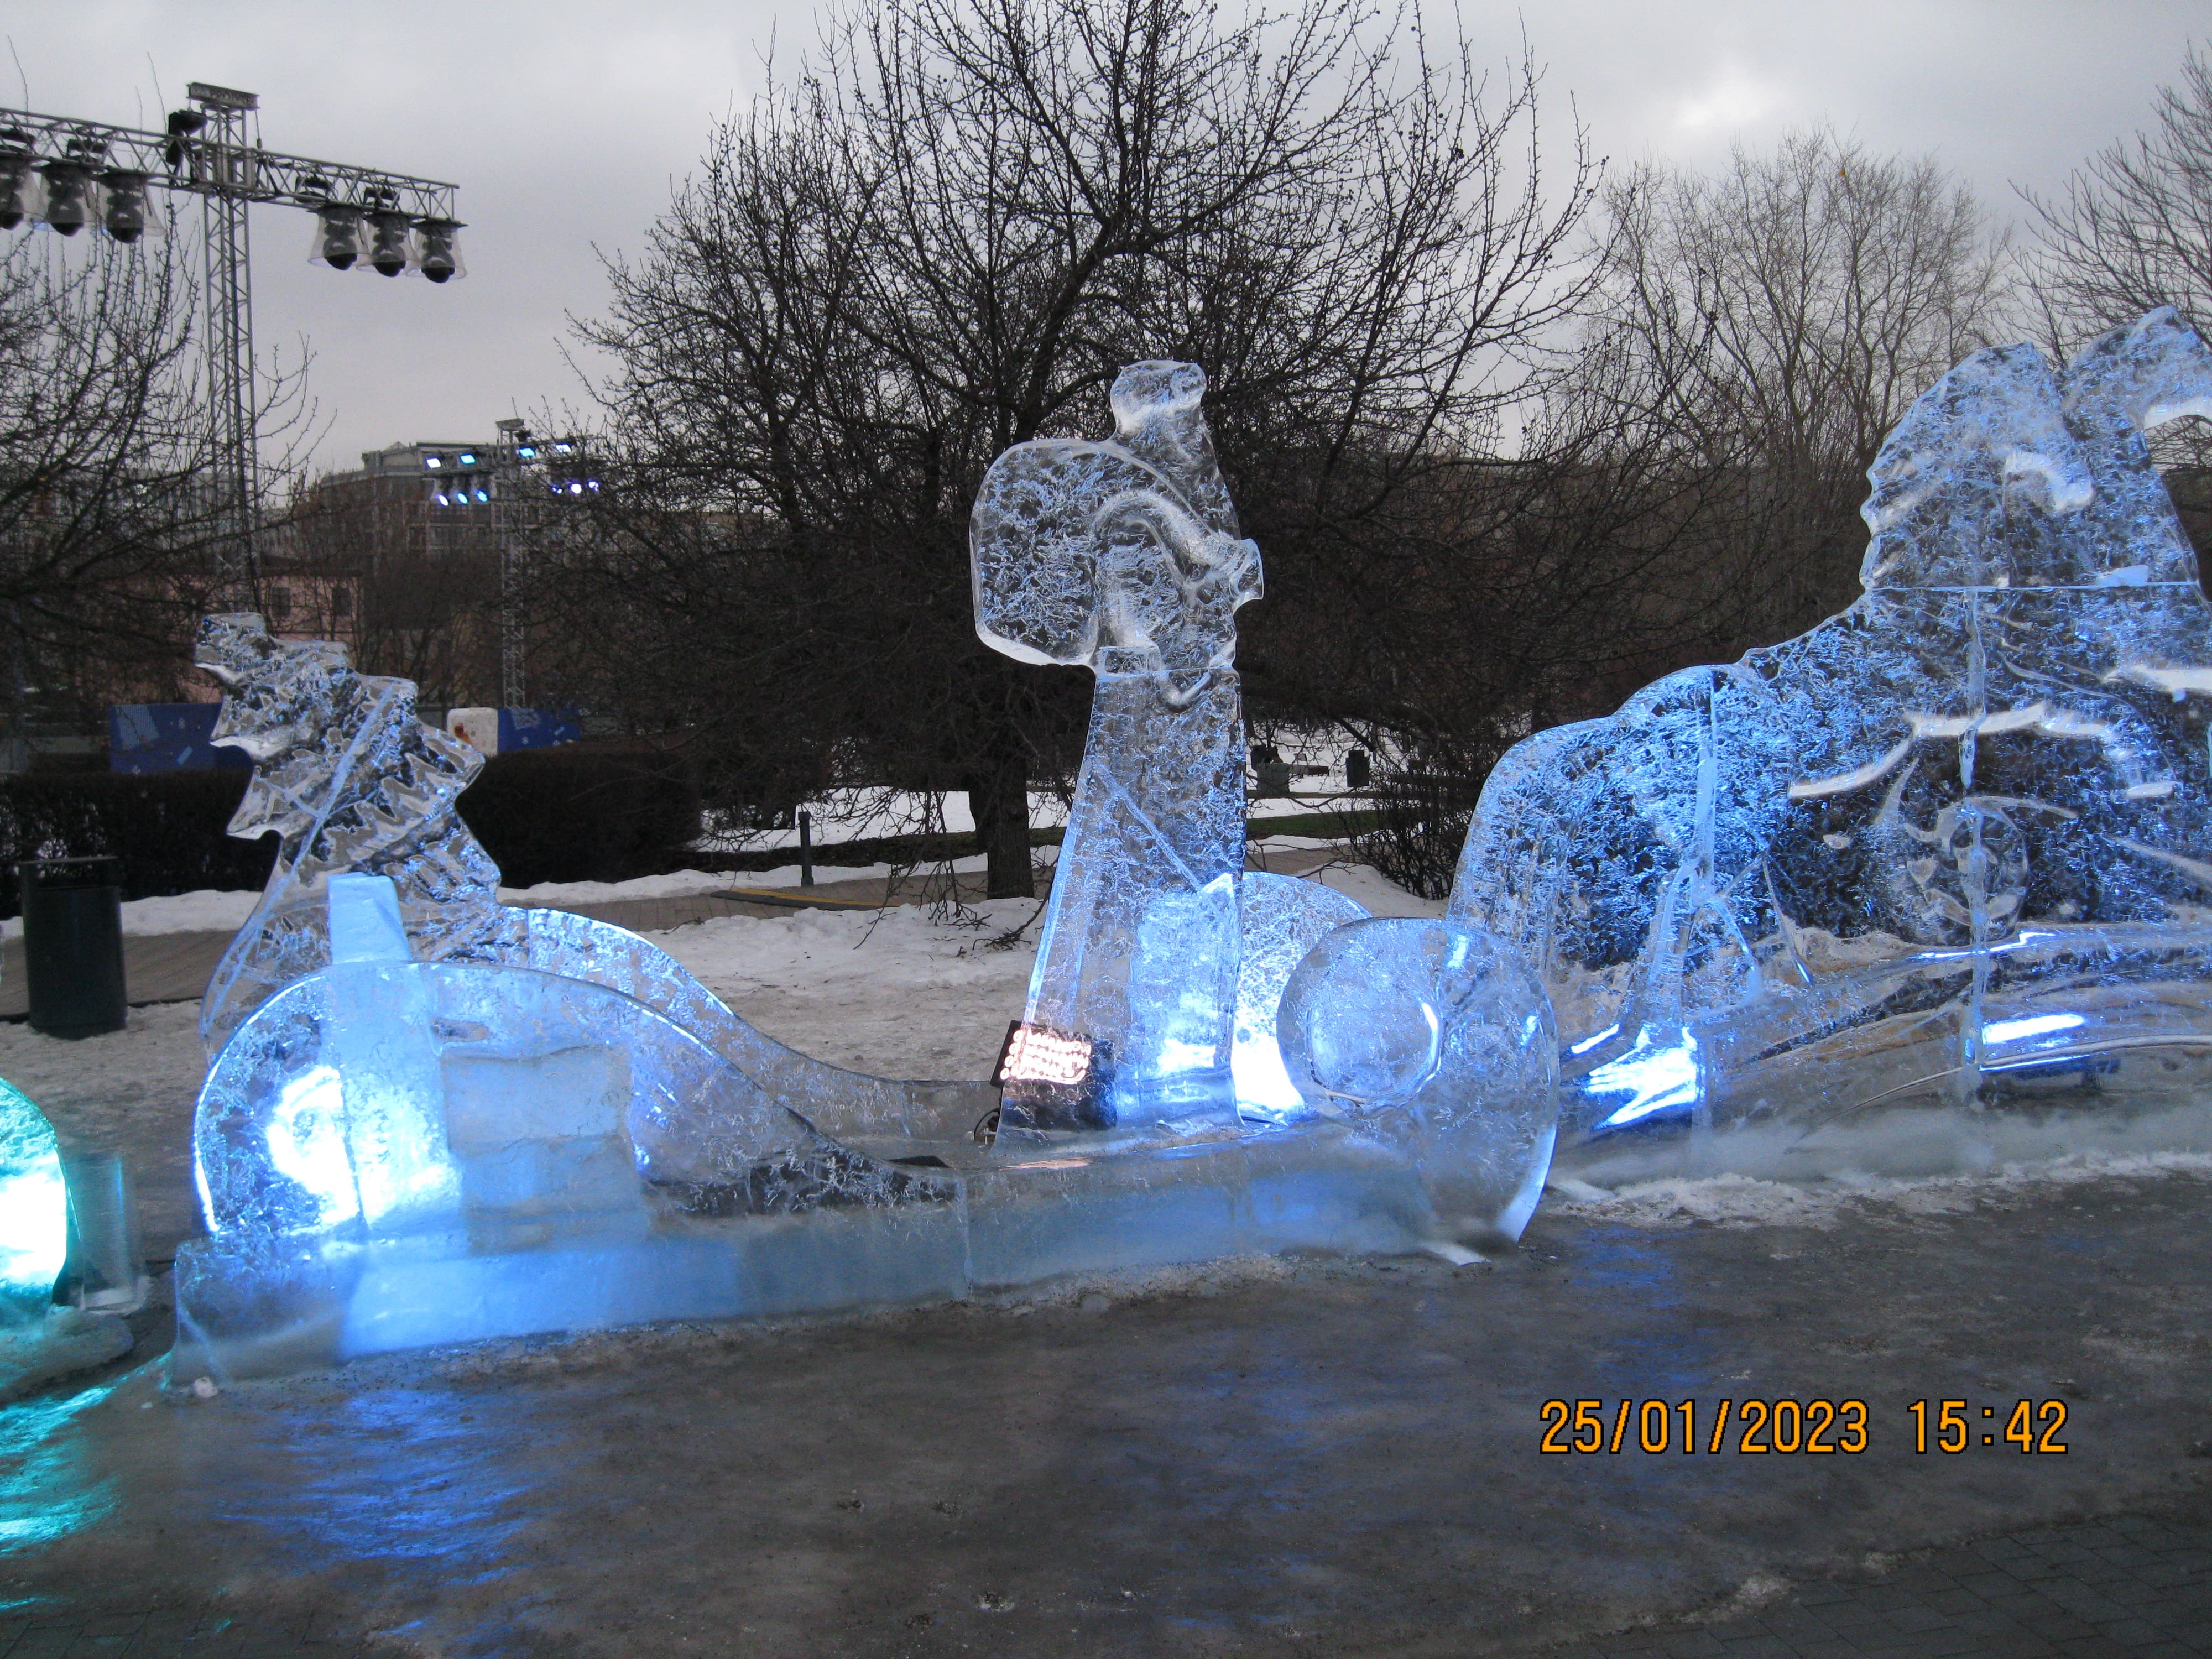  Выставка ледяных скульптур в парке Музеон Москвы - "Снег и Лёд". Ледяные и снежные фигуры и скульптуры